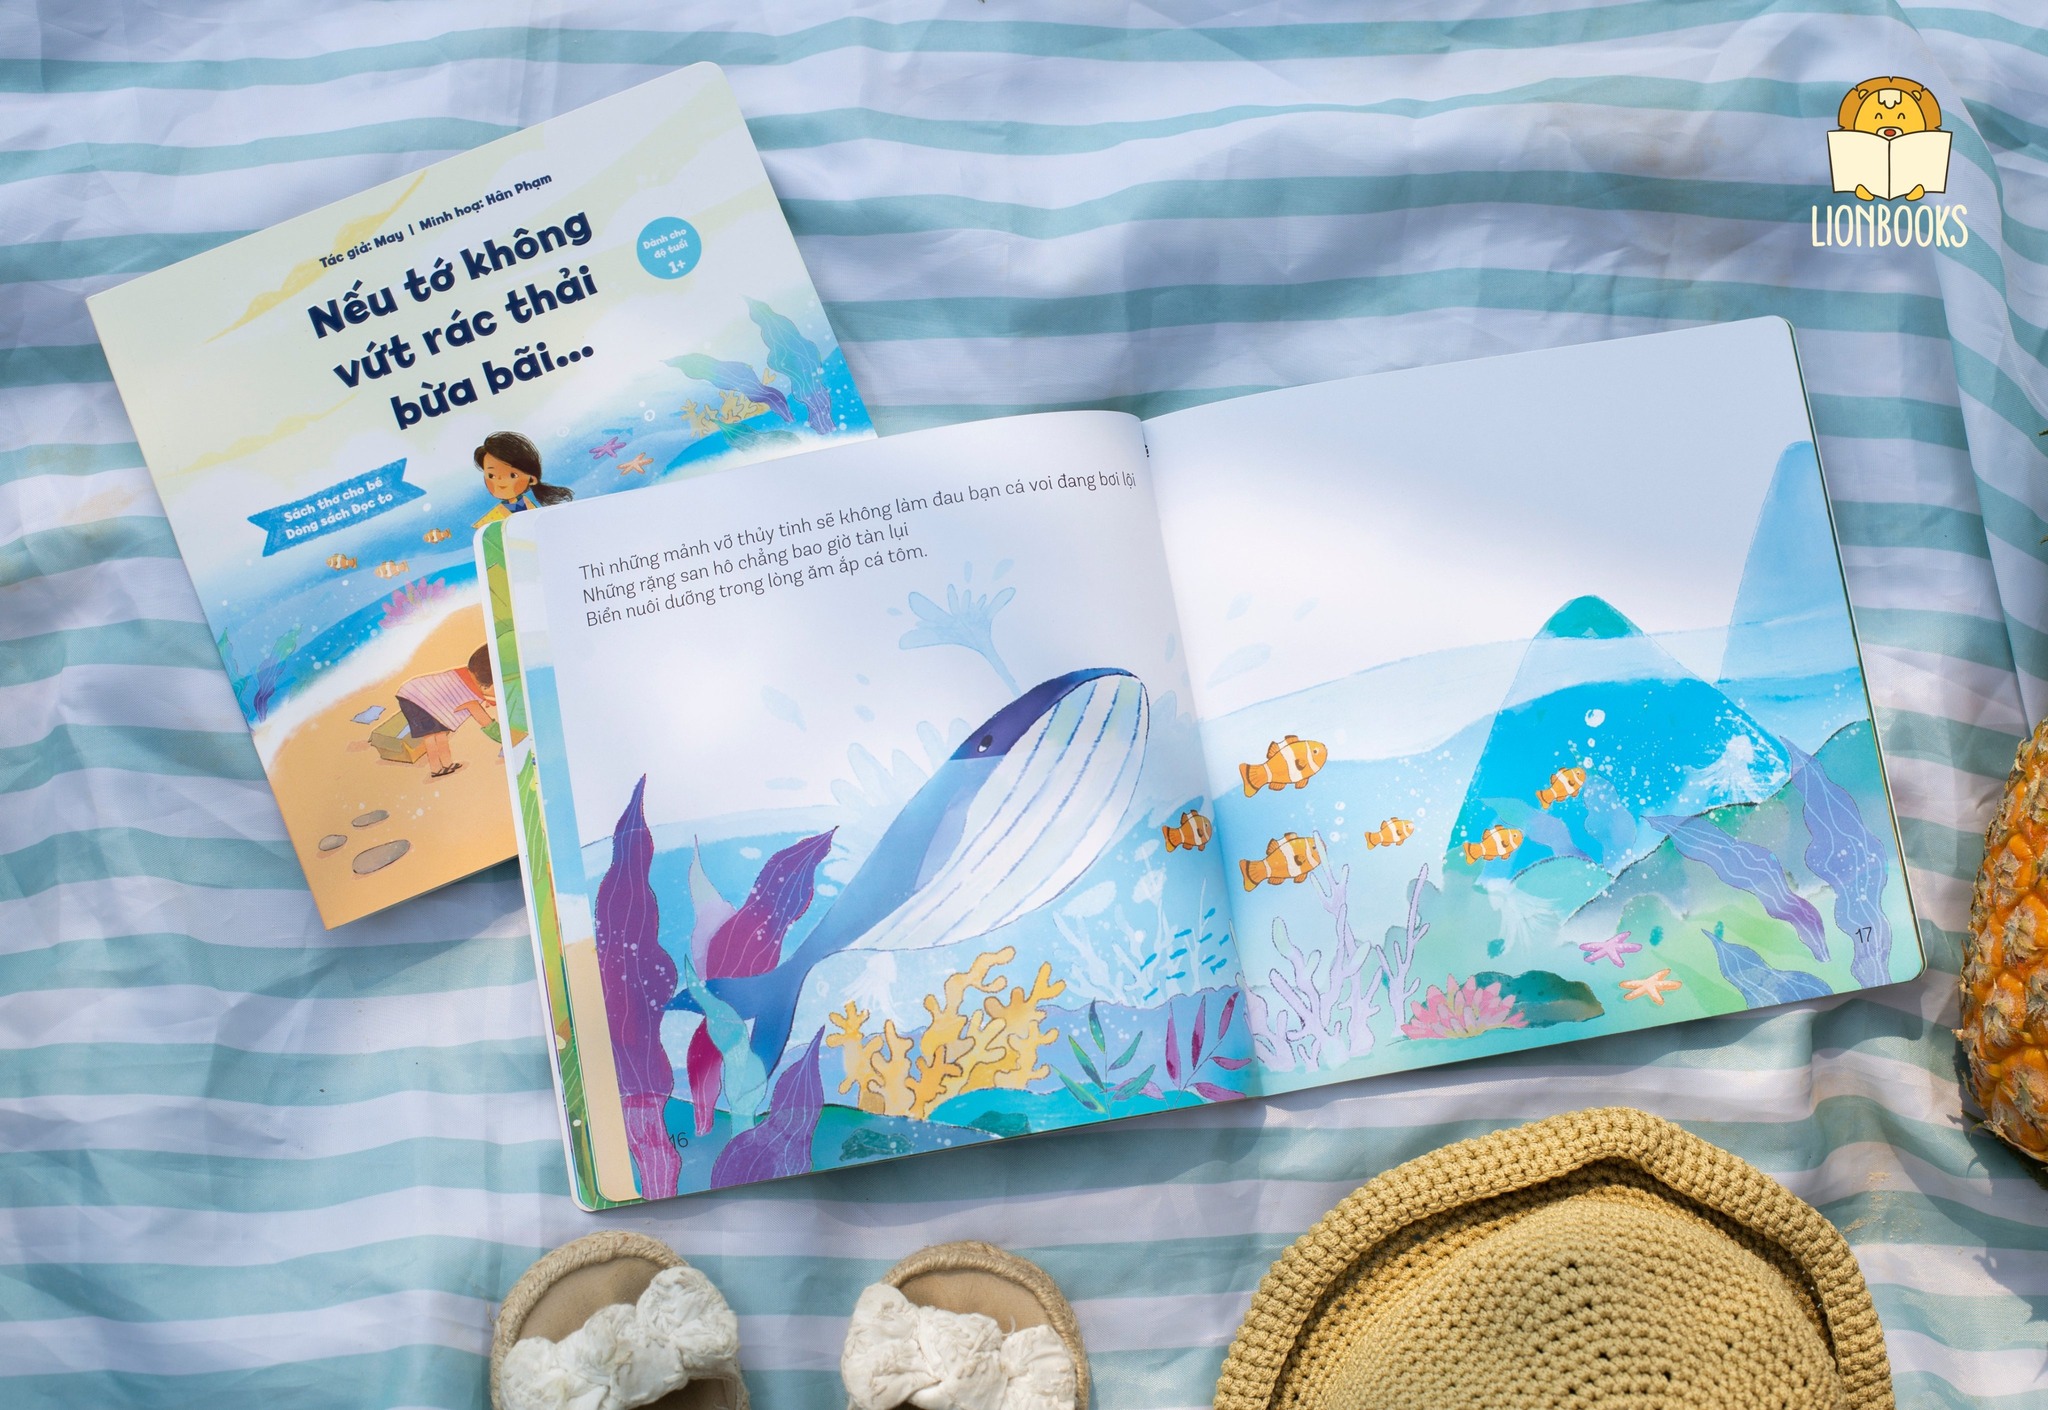 Sách Thơ - Nếu tớ không vứt rác thải bừa bãi cho bé 0-6 tuổi - LionBooks